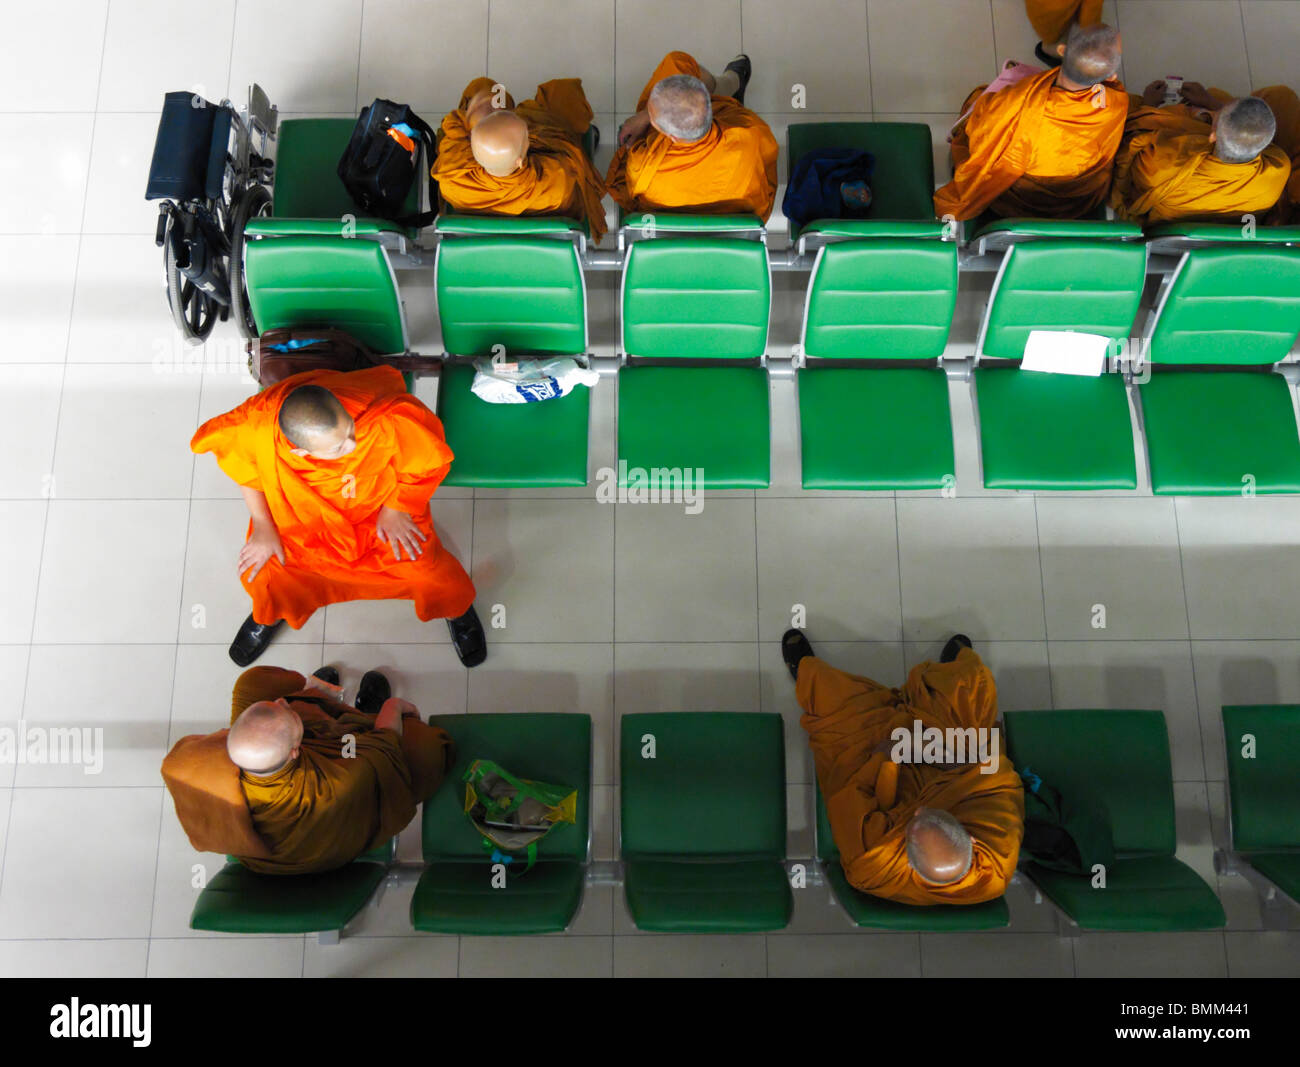 Un groupe de moines thaïlandais à revêtement orange assis sur des bancs verts attendant leur vol vers Zurich Kloten (ZRH/LSZH), Bangkok TH Banque D'Images